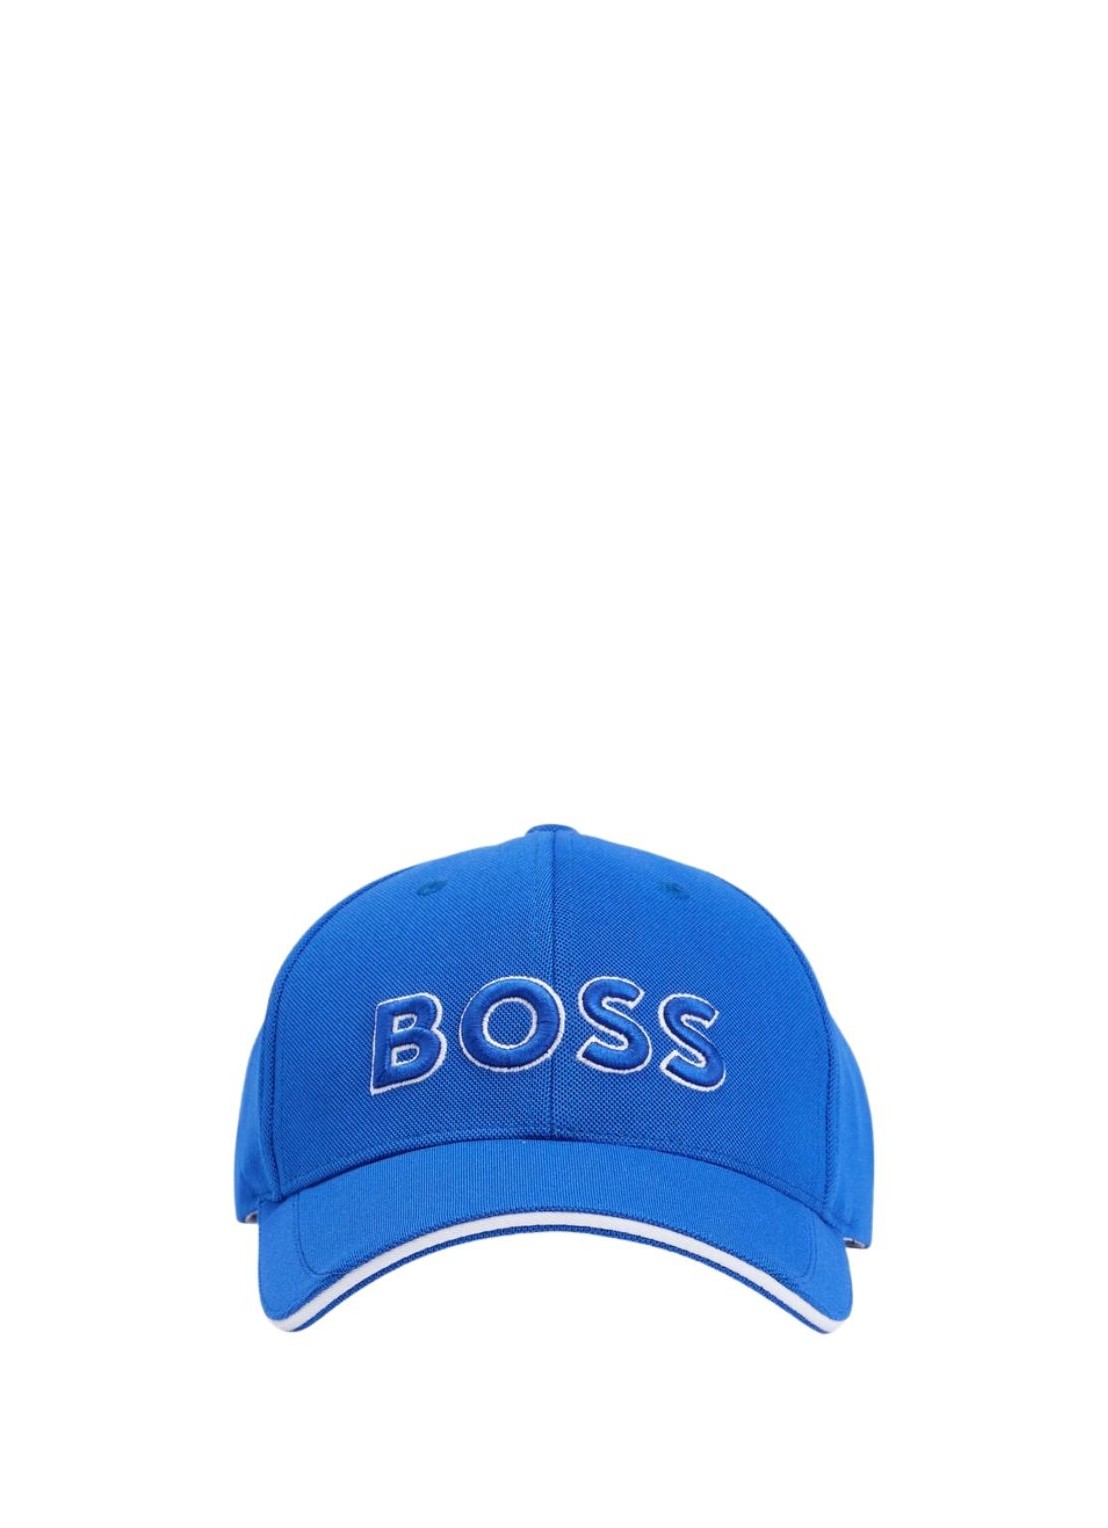 boss cap-us-1 - 50496291 438 Talla T/U